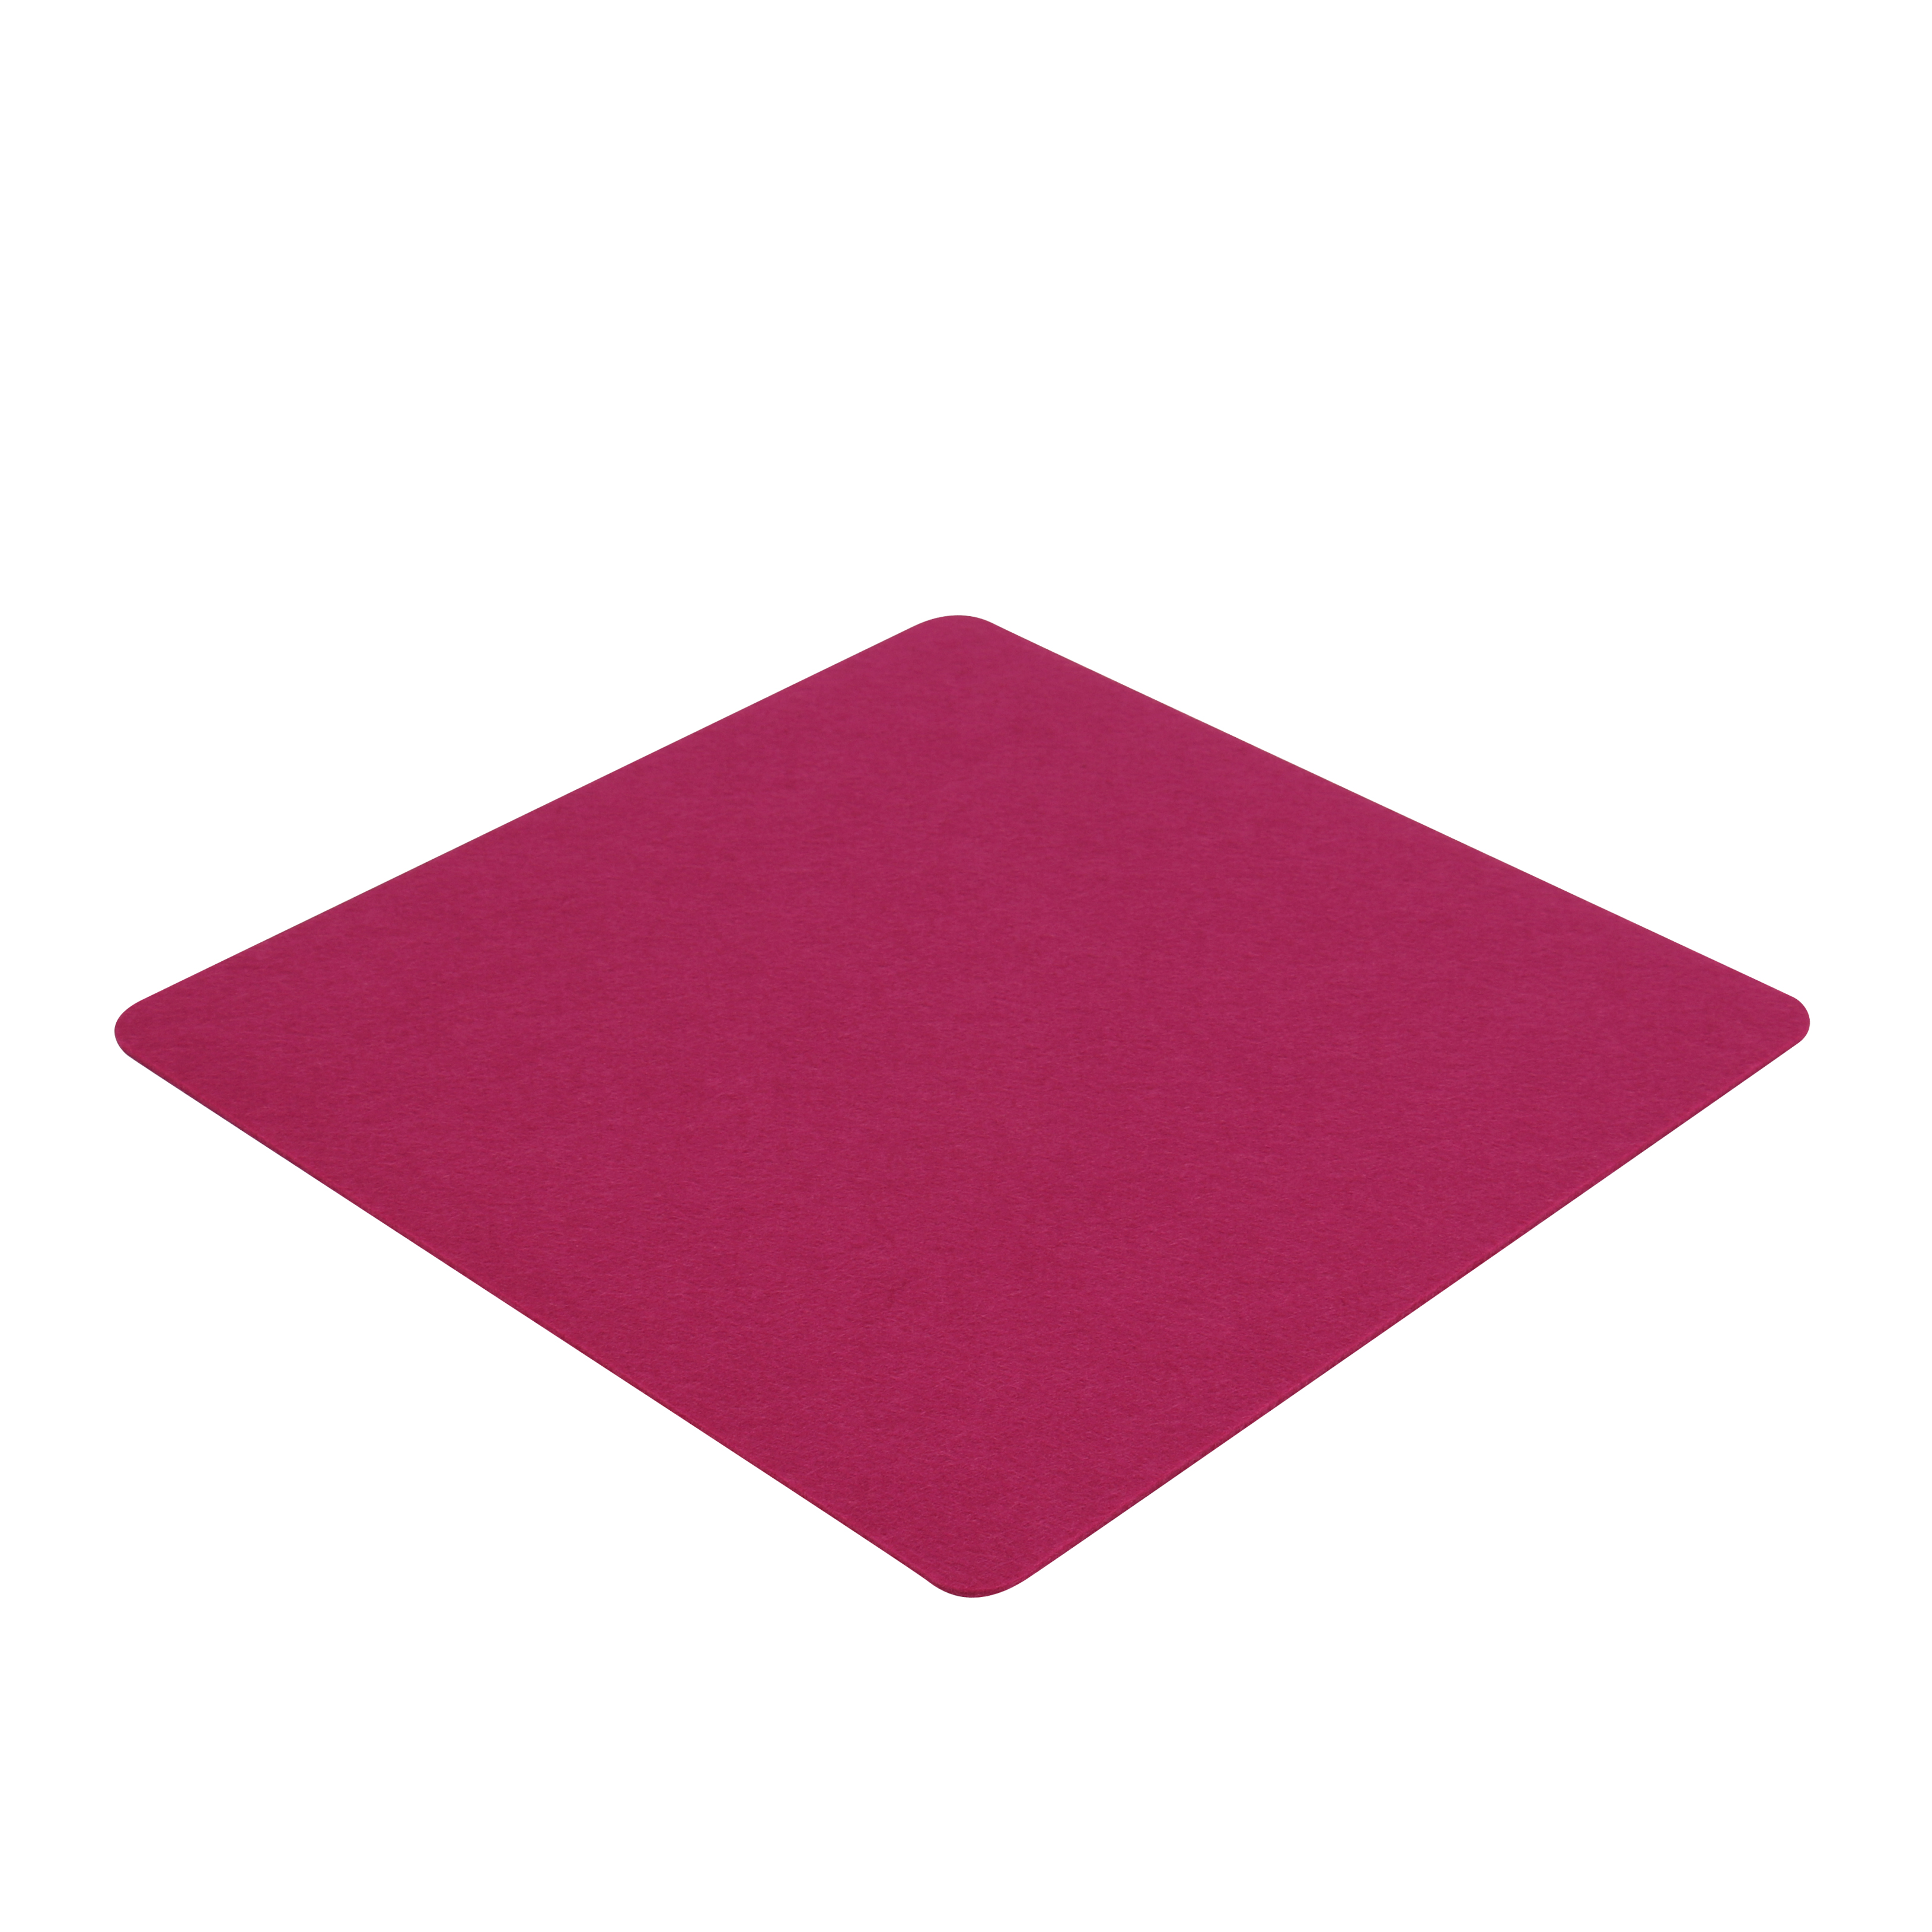 7EVEN Filz 4mm z.B. Einseitig FIlzauflage für Hocker Lila/ Auflage 40 Purple/Pink- x 40 cm Cube